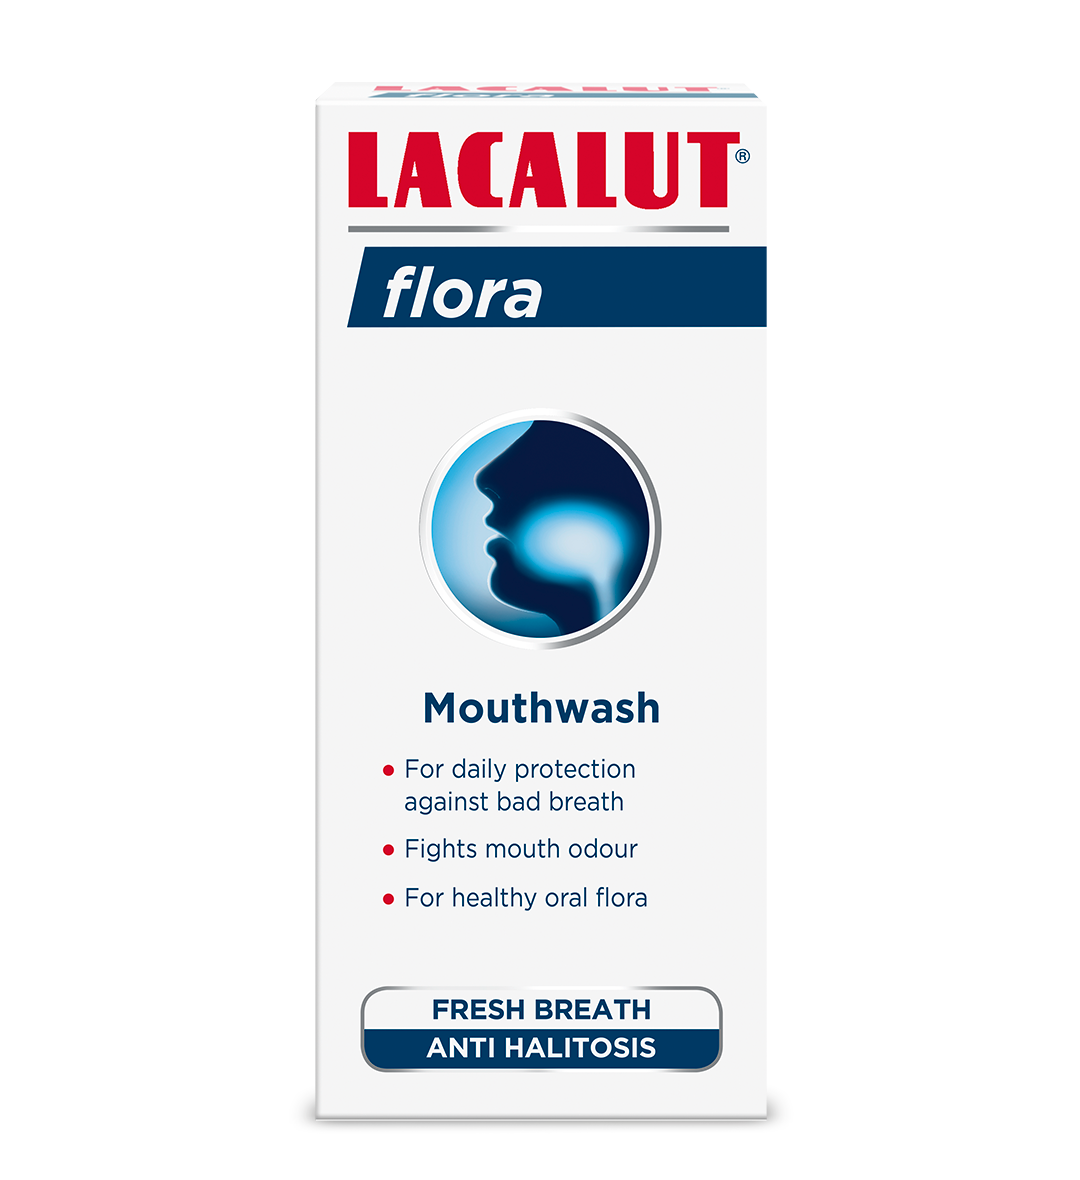 LACALUT® flora Mouthwash